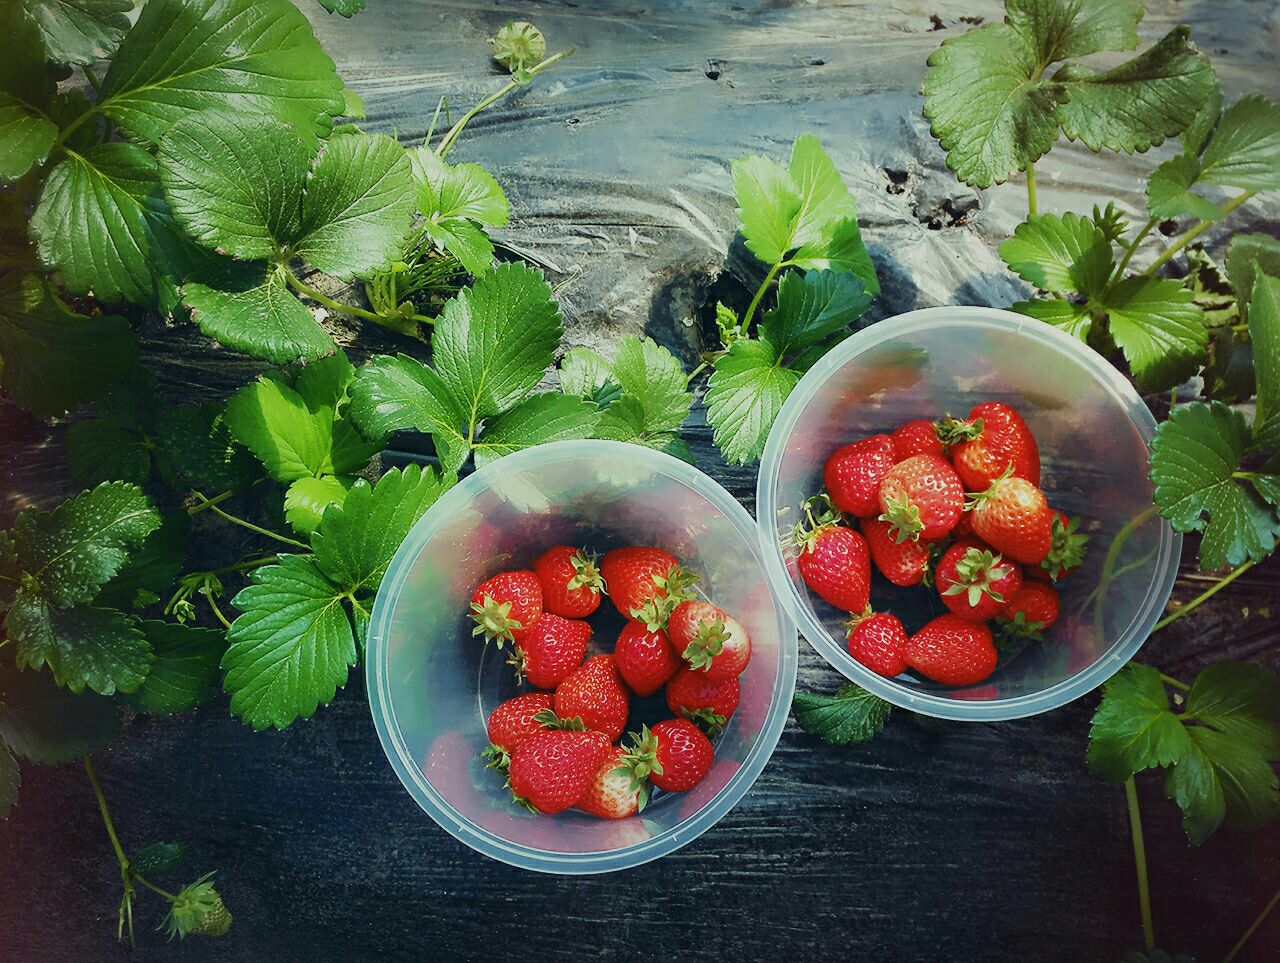 草莓立体种植 价格产量两增-温岭新闻网